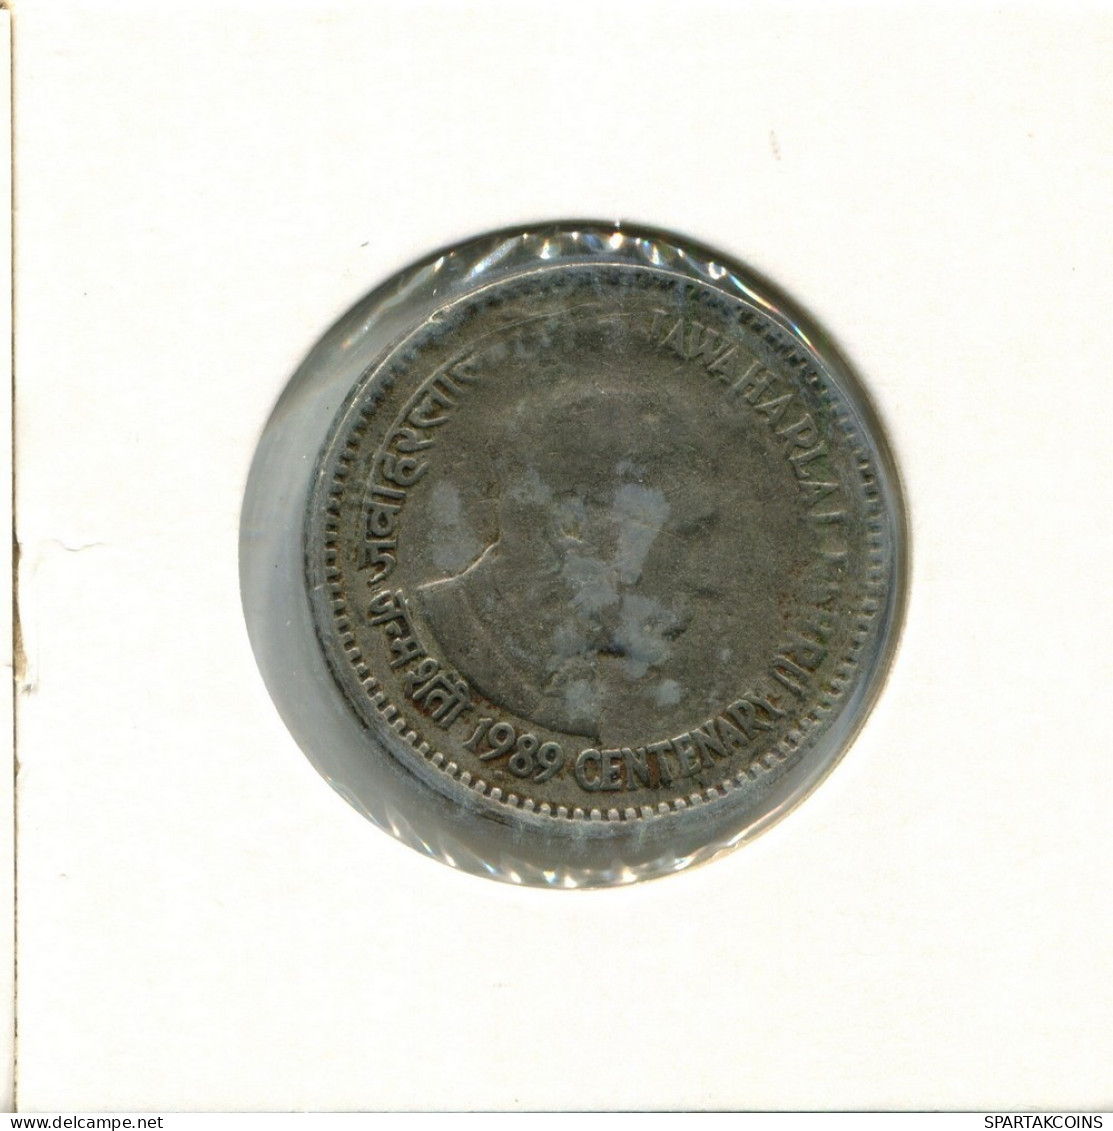 1 RUPEE 1989 INDIA Moneda #AY821.E.A - India